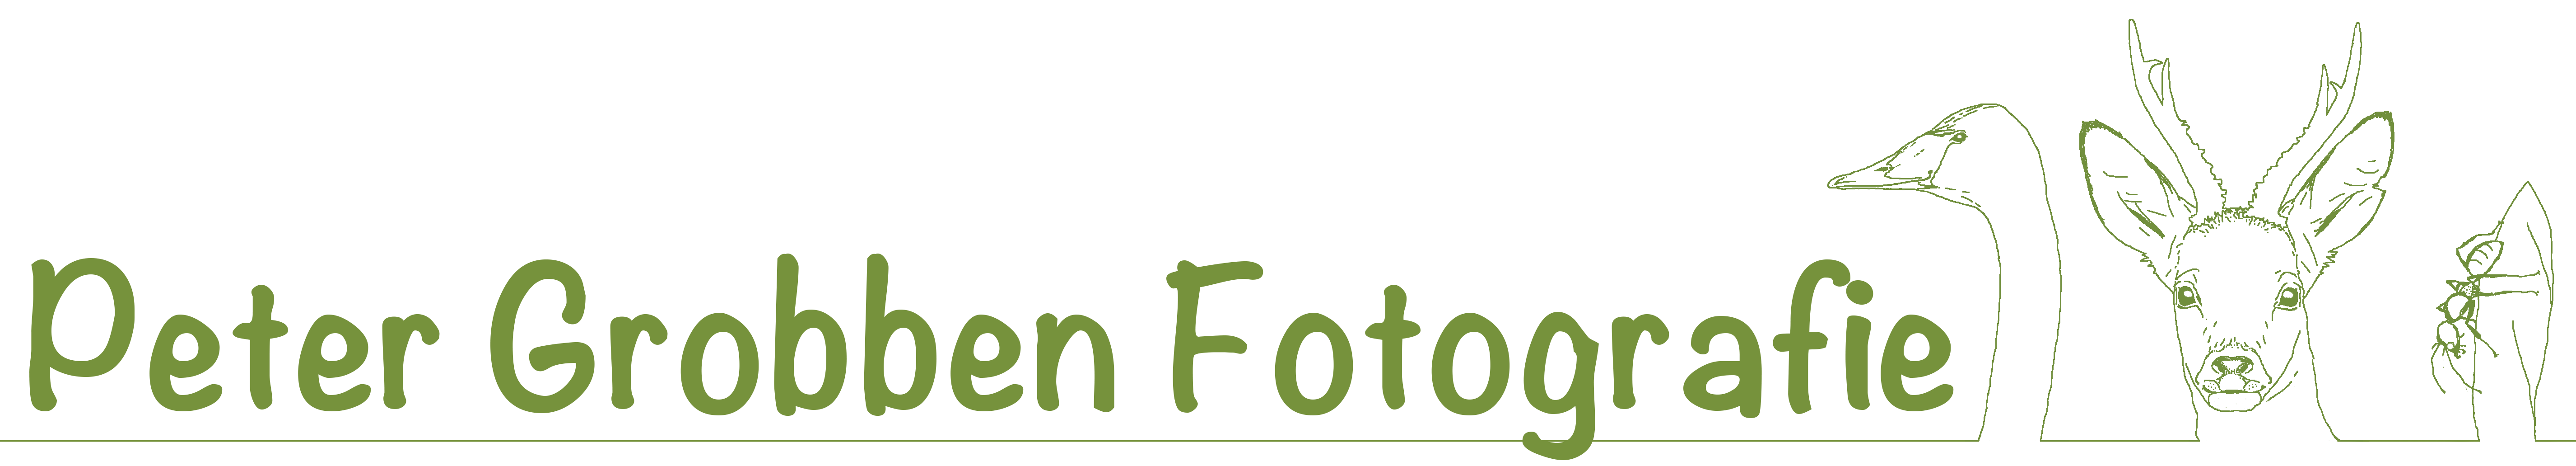 Peter Grobben Fotografie logo definitief zonder ondertekst voor factuur en website